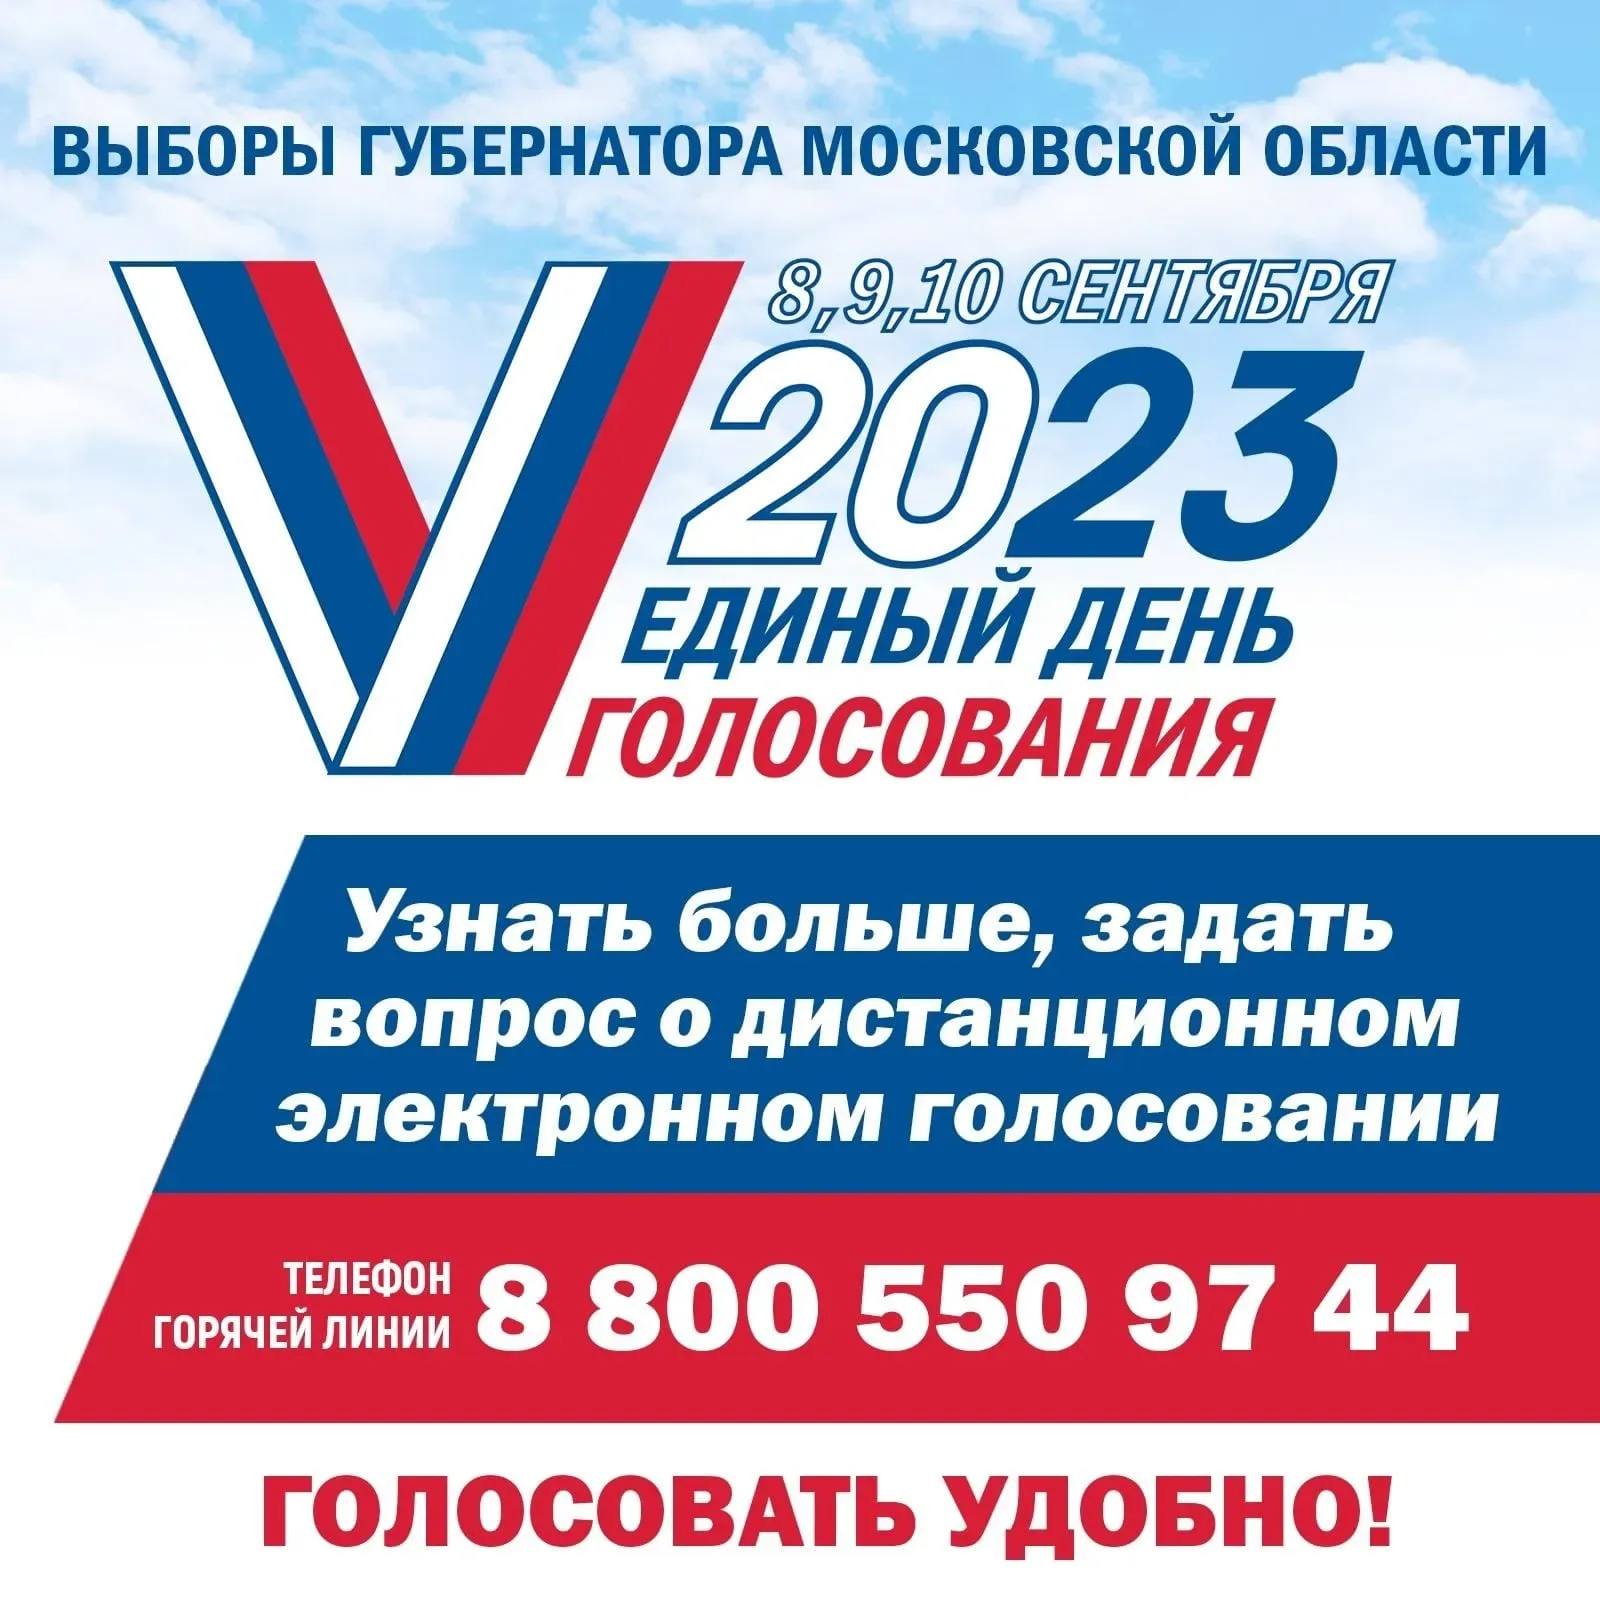 Проголосовать мо. Выборы губернатора Московской области. Выборы 2023. Единый день голосования 10 сентября 2023 года. Выборы губернатора Московской области 2023.